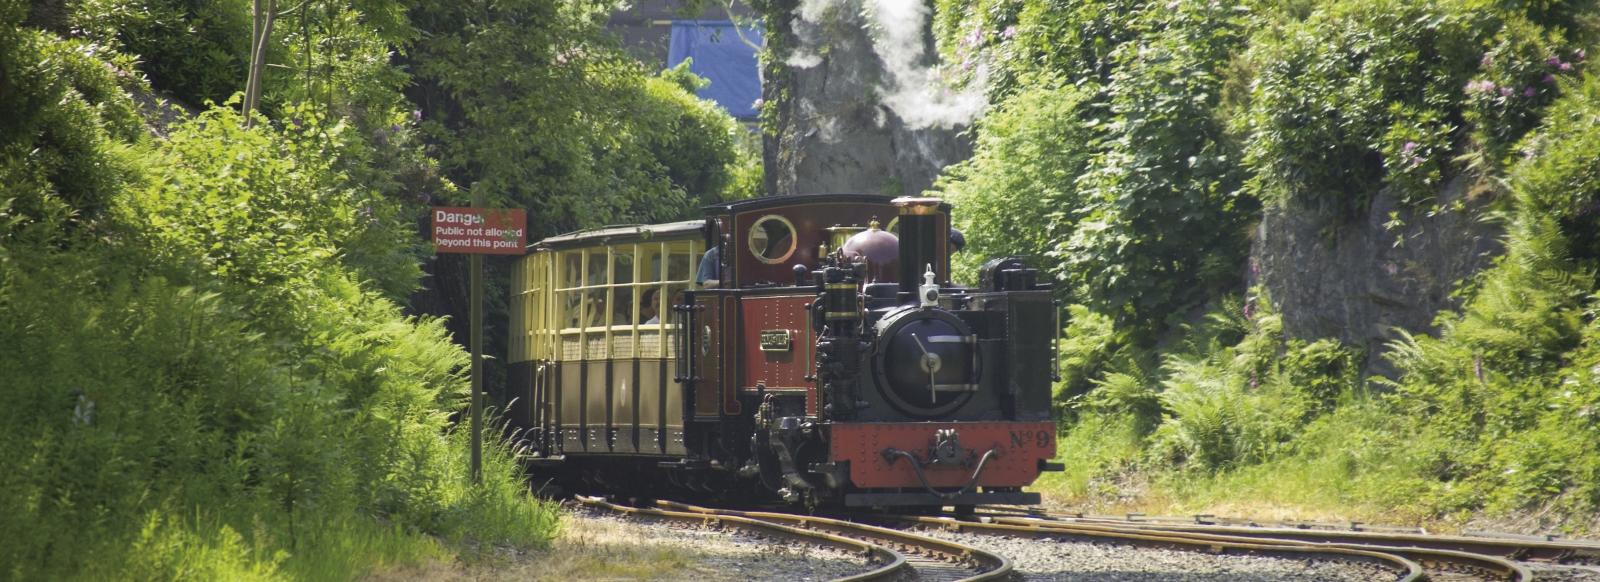 The Vale of Rheidol Railway